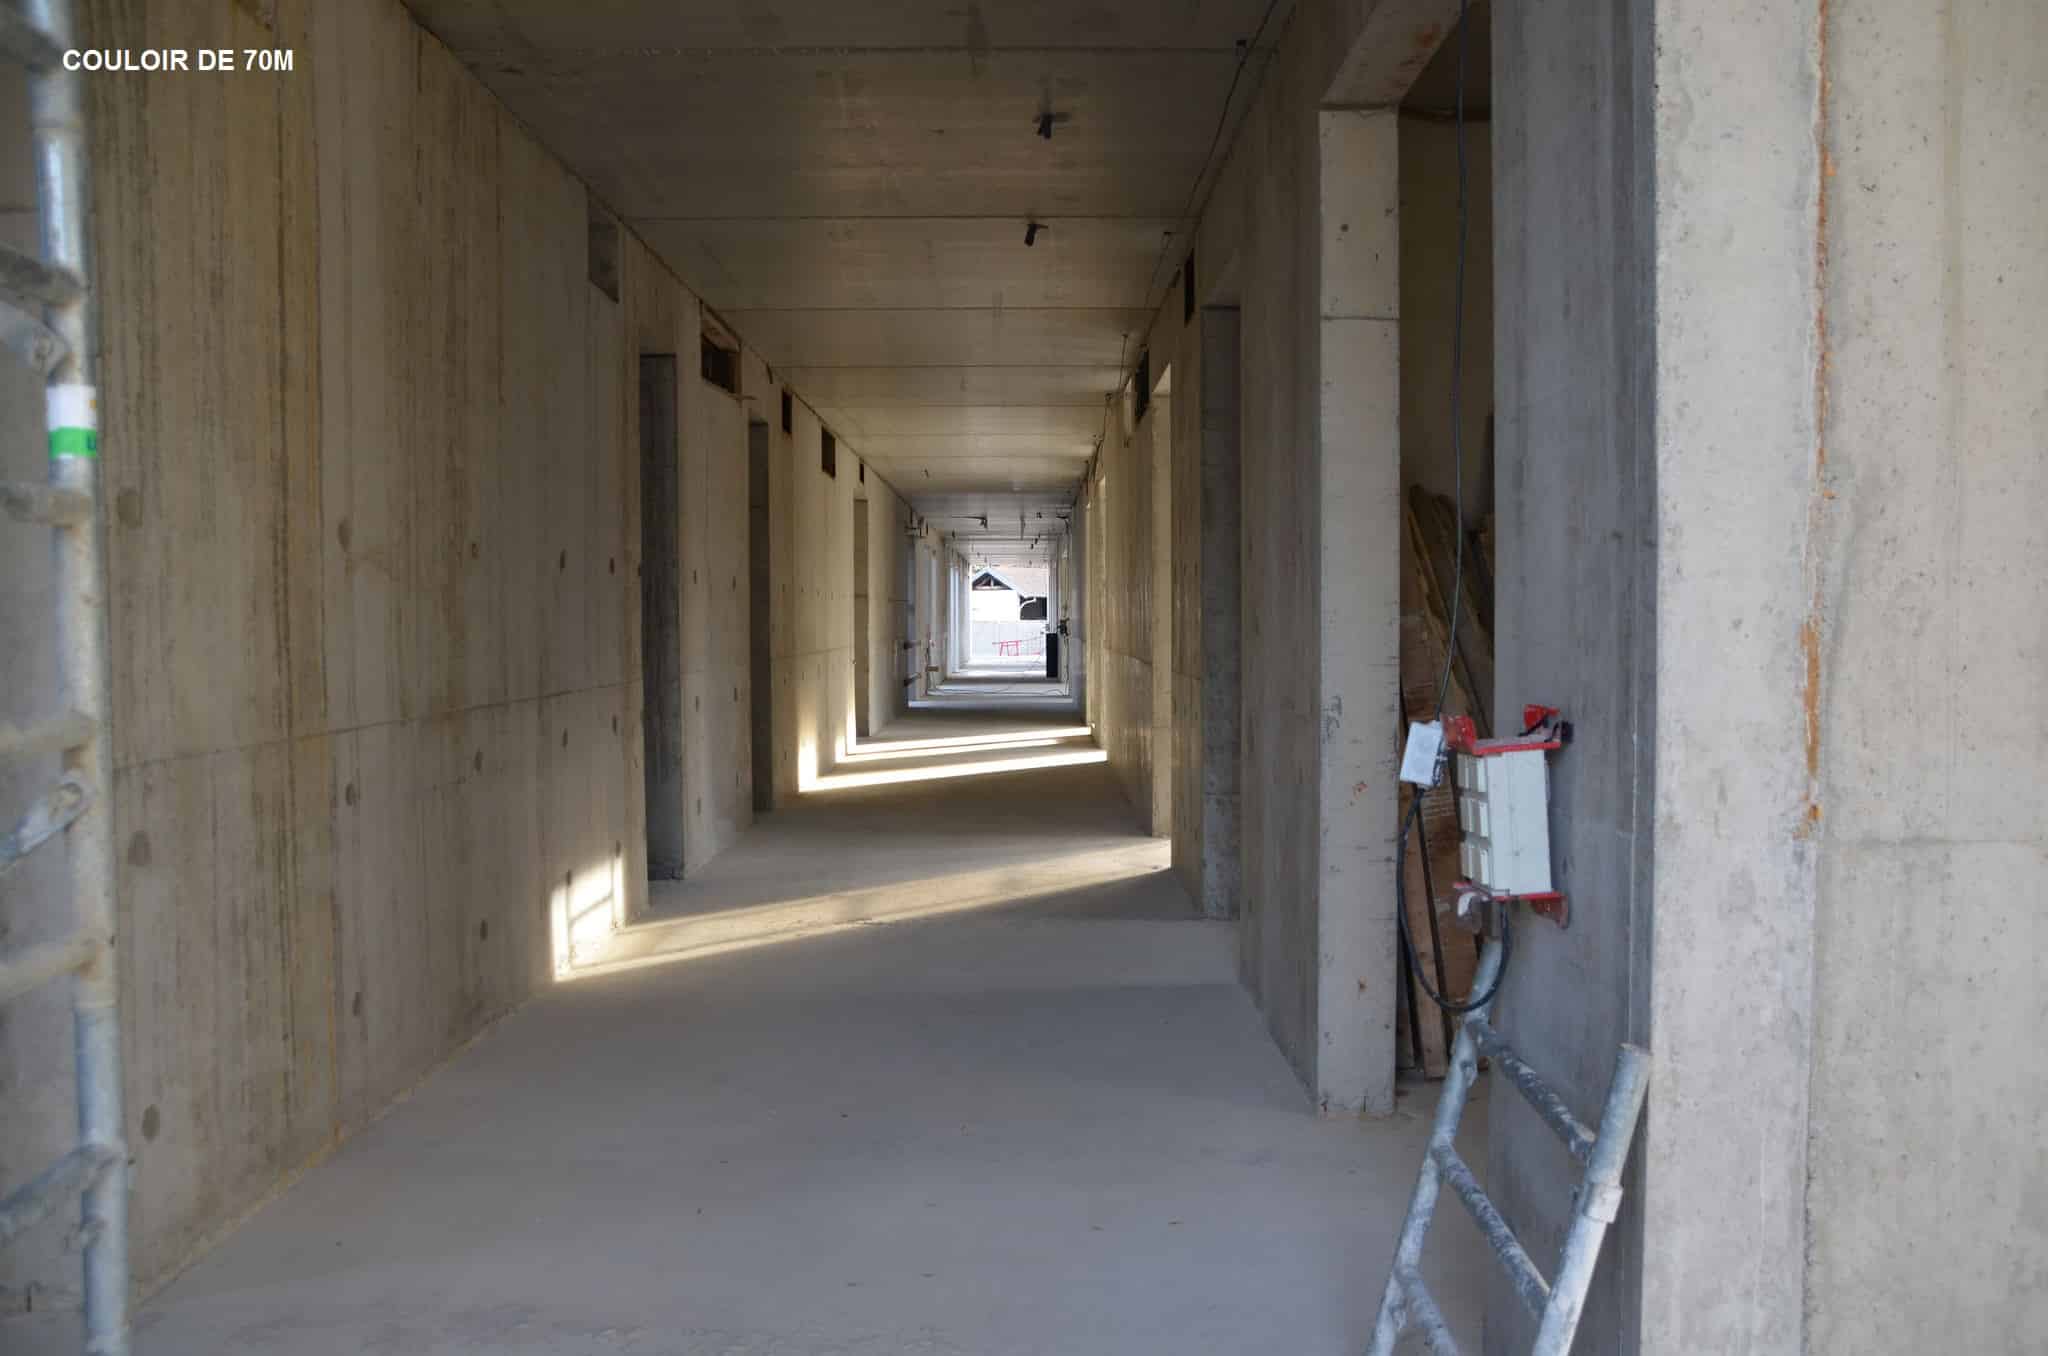 Couloir premier étage du Centre Annour de Mulhouse